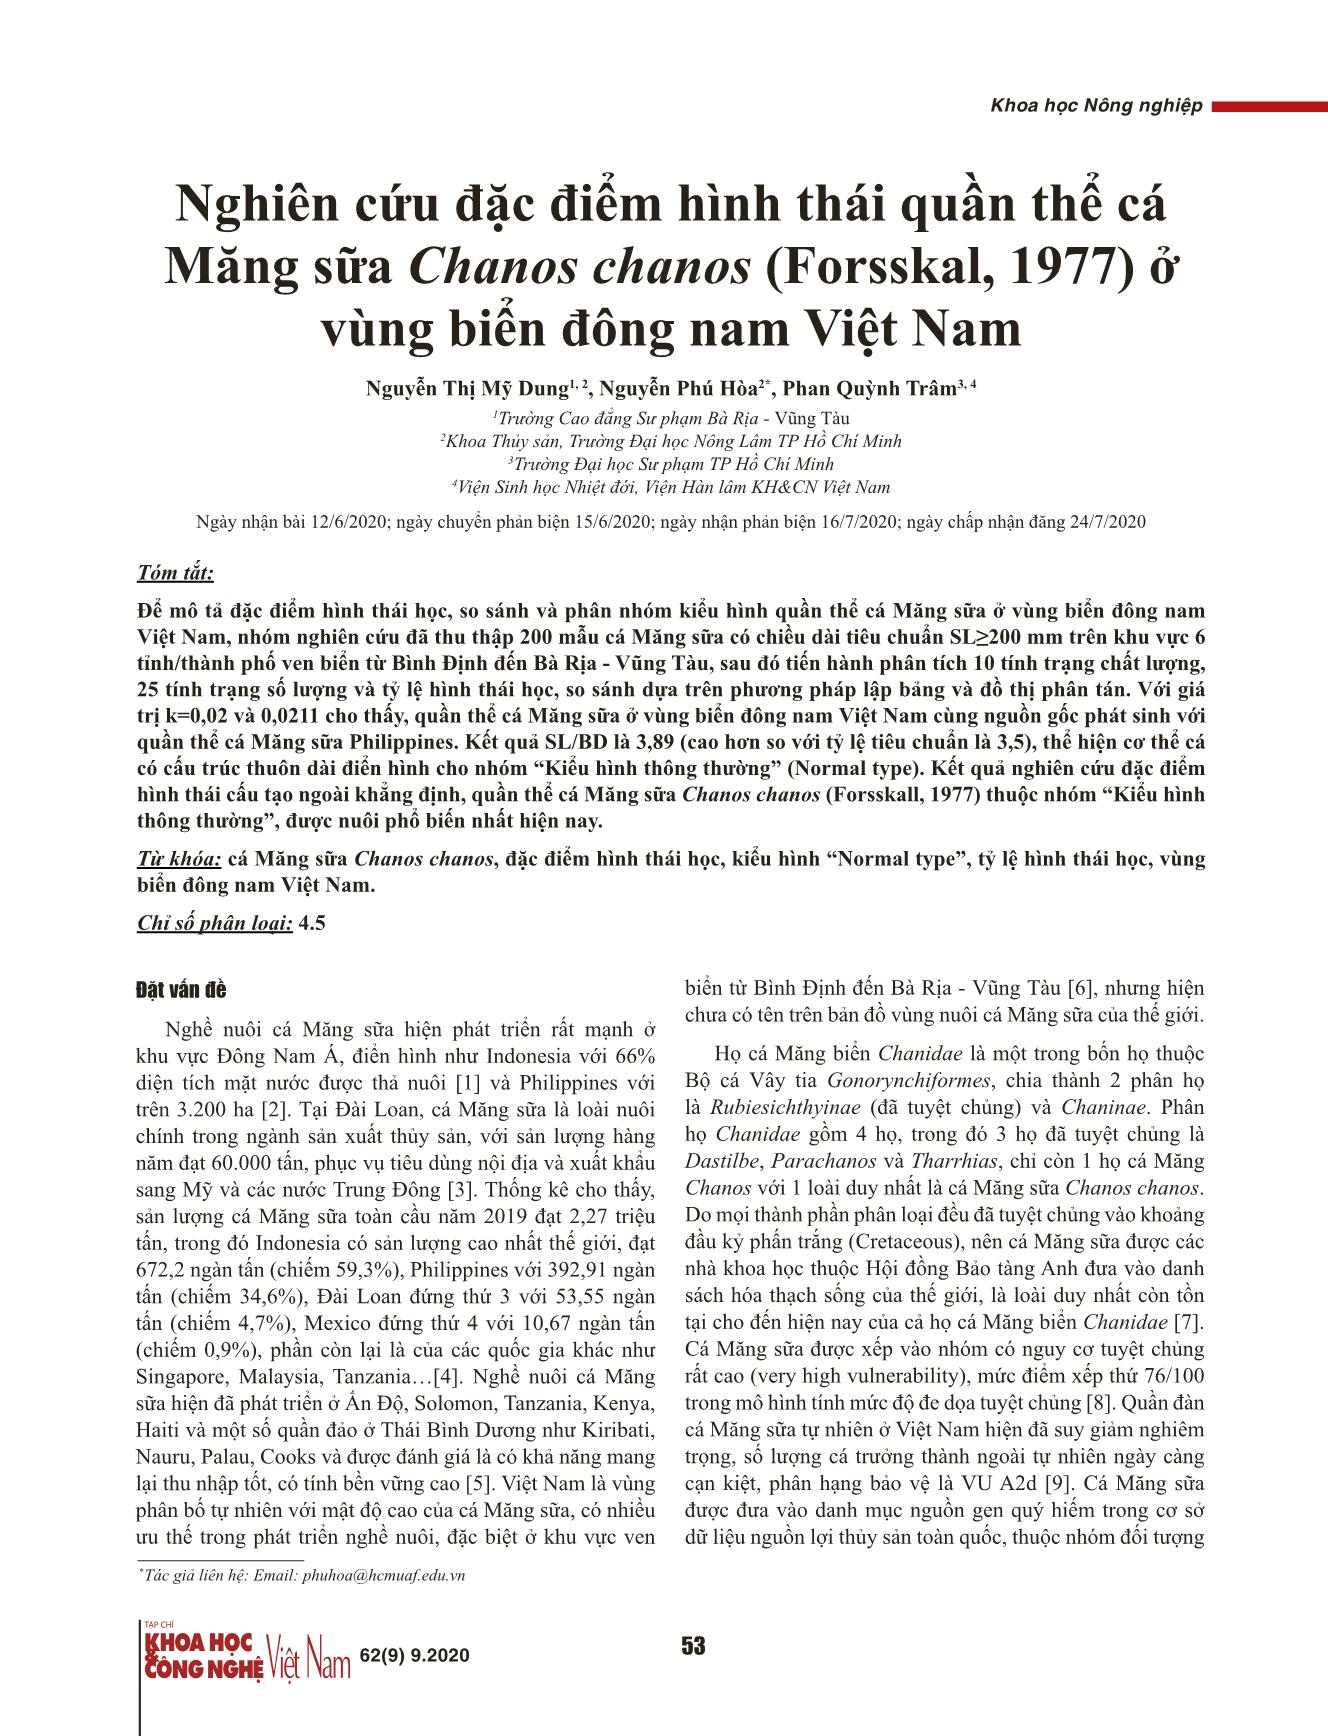 Nghiên cứu đặc điểm hình thái quần thể cá Măng sữa Chanos chanos (Forsskal, 1977) ở vùng biển Đông Nam Việt Nam trang 1